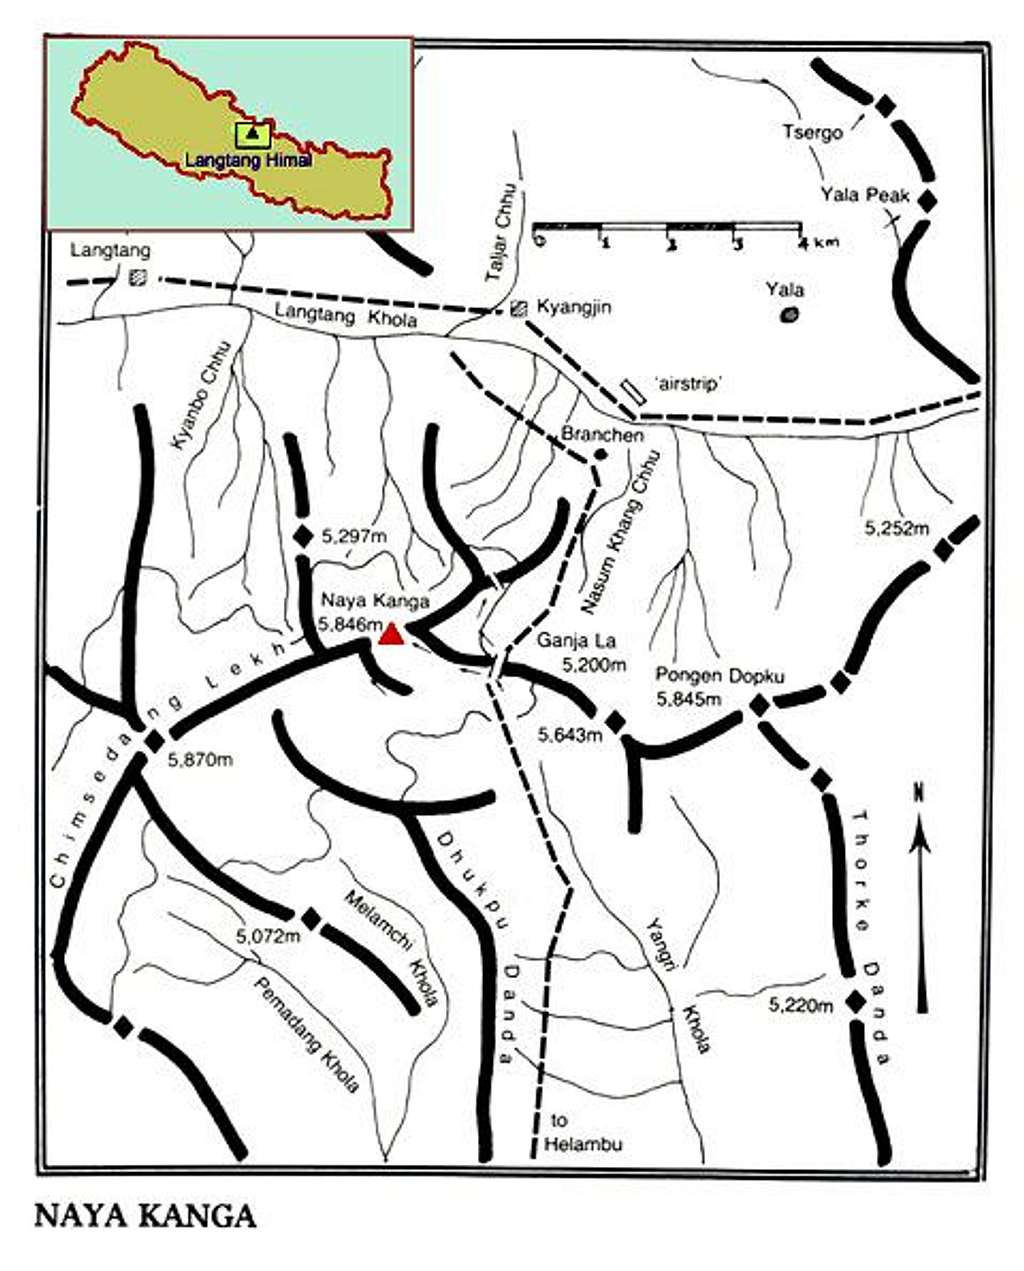 Overview map for Naya Kanga